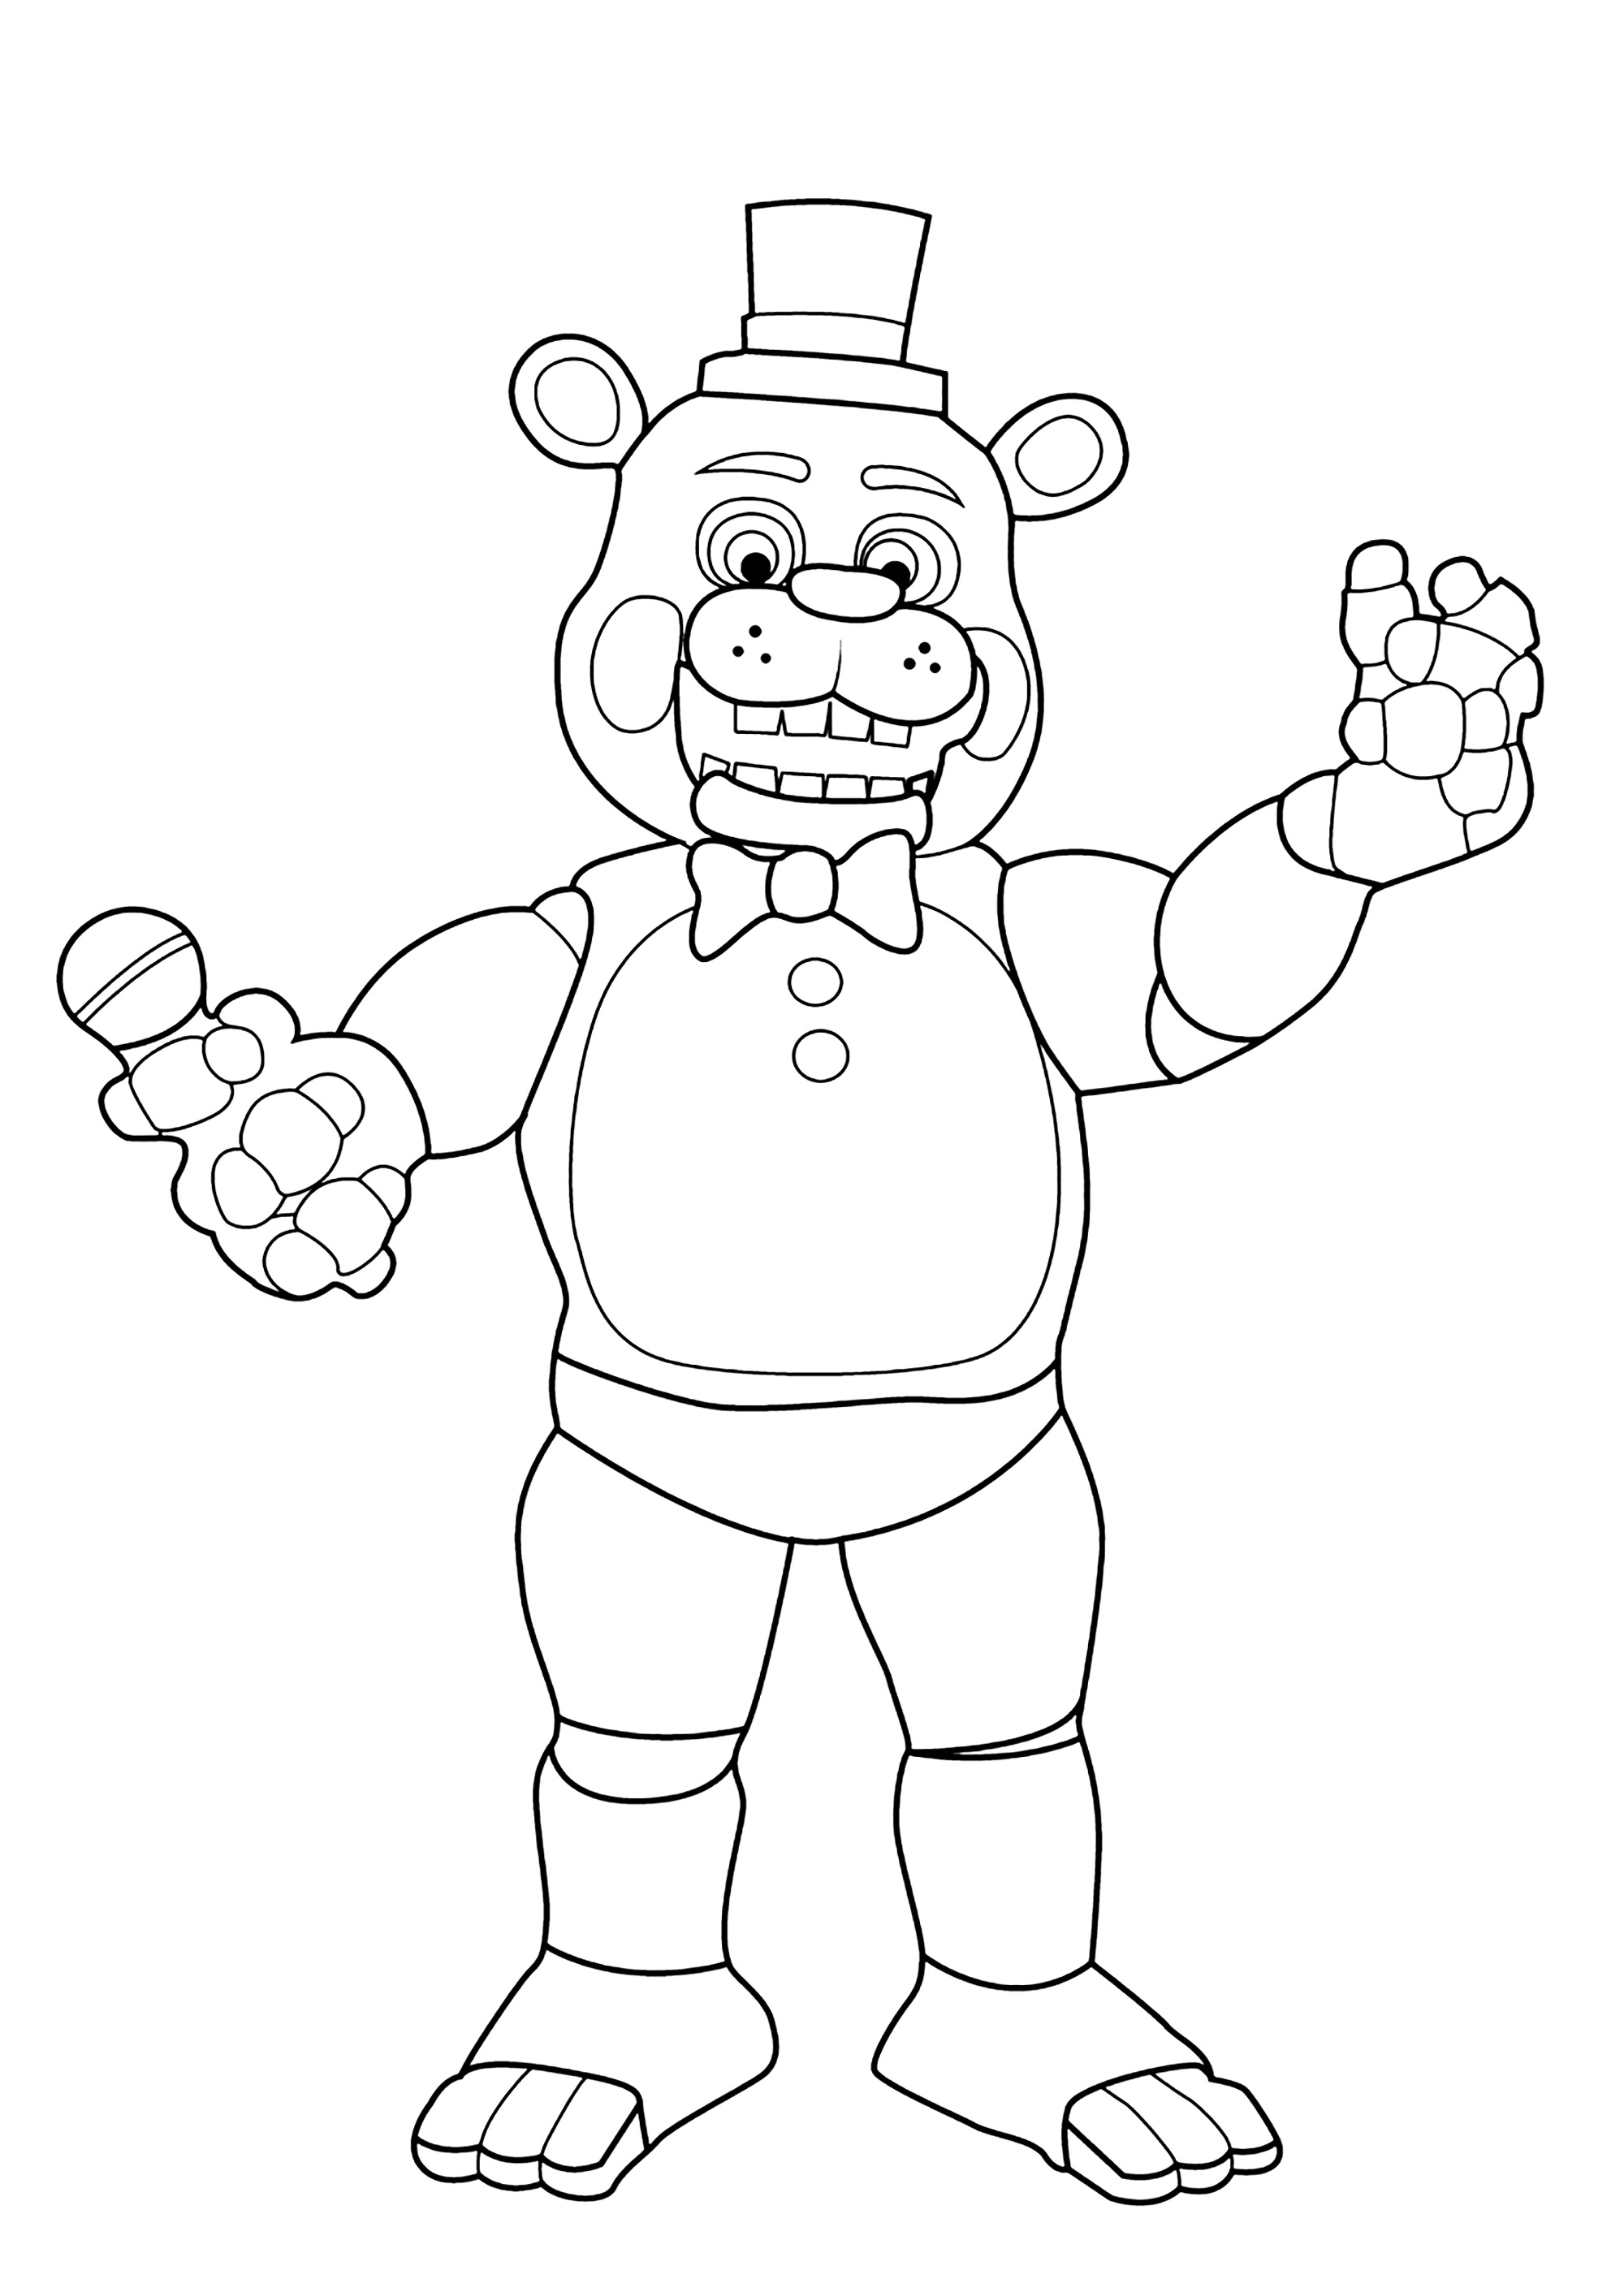 Freddy Fazbear: el oso animatrónico. Freddy es un oso animatrónico y la mascota de la pizza original Freddy Fazbear.